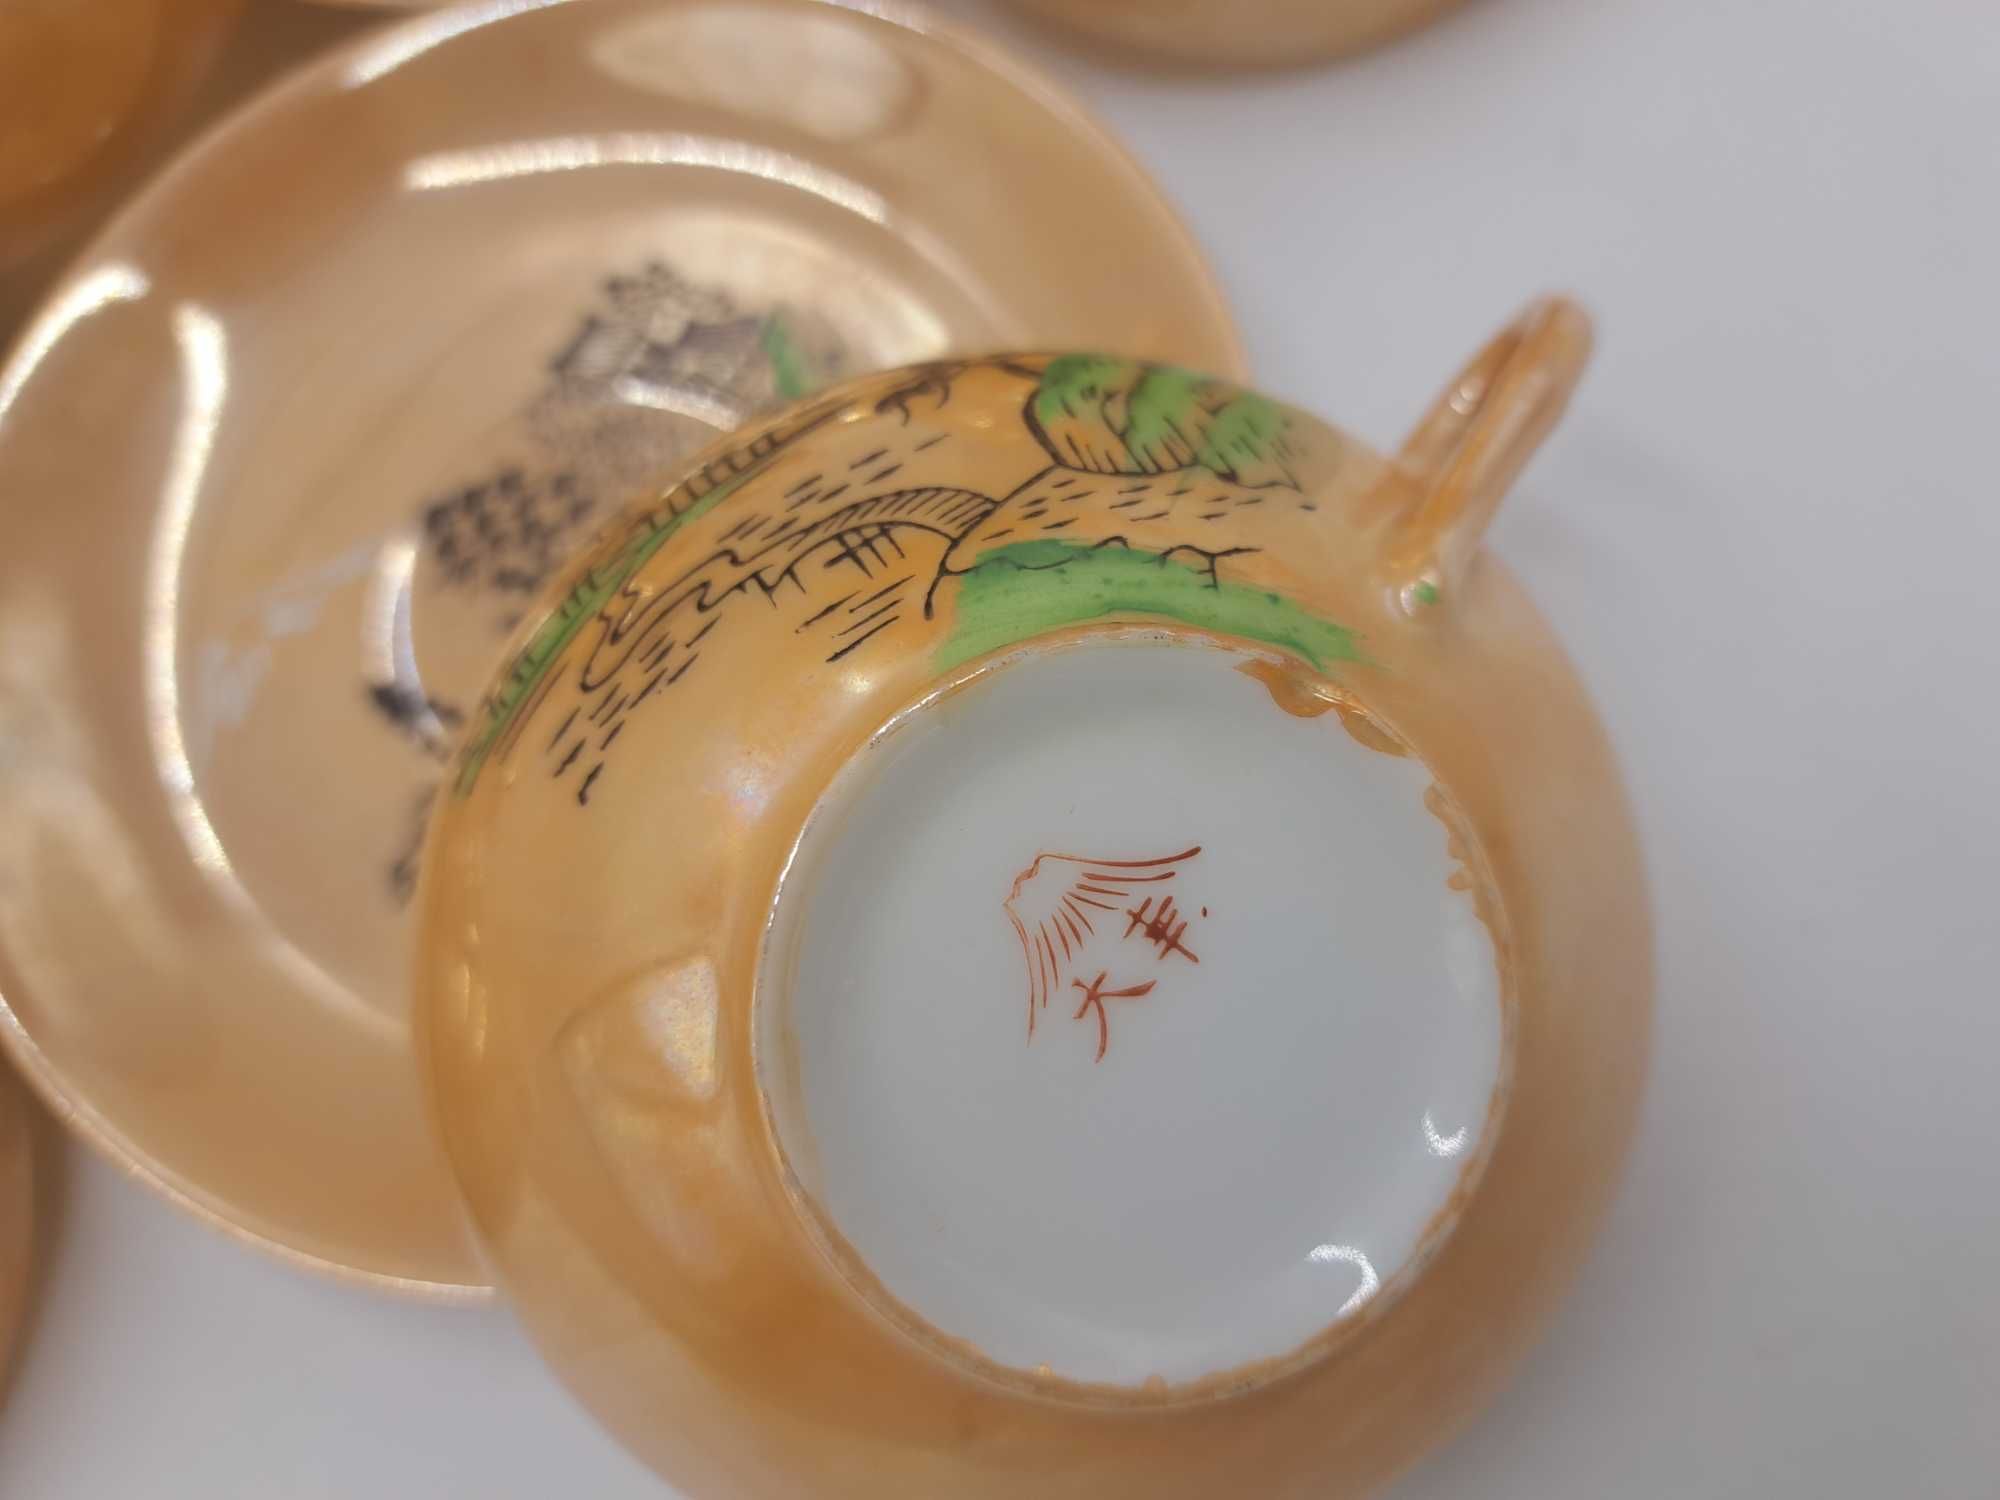 Serwis porcelanowy japoński kawowy, herbaciany ręcznie malowany 6 os